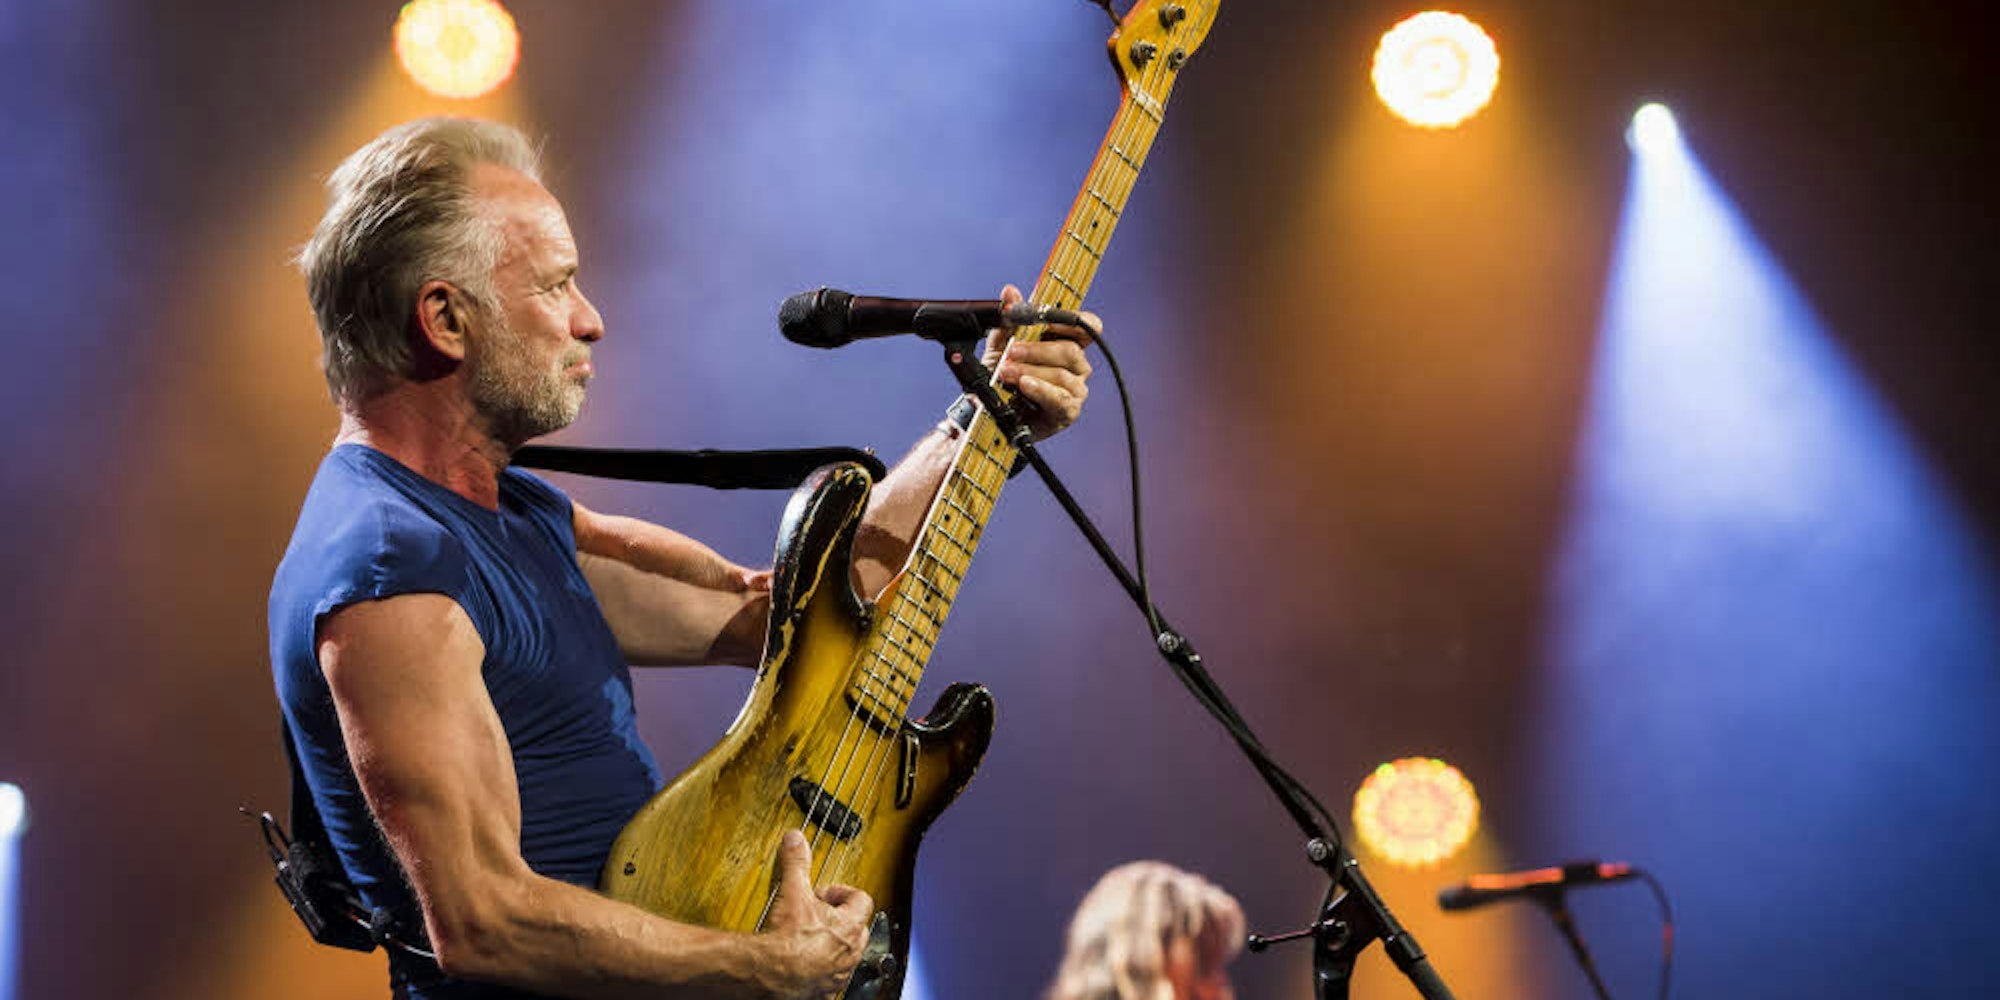 Seit mehr als 40 Jahren auf der Bühne: Hier spielt Sting Ende Juni beim Jazz Festival in Montreux .